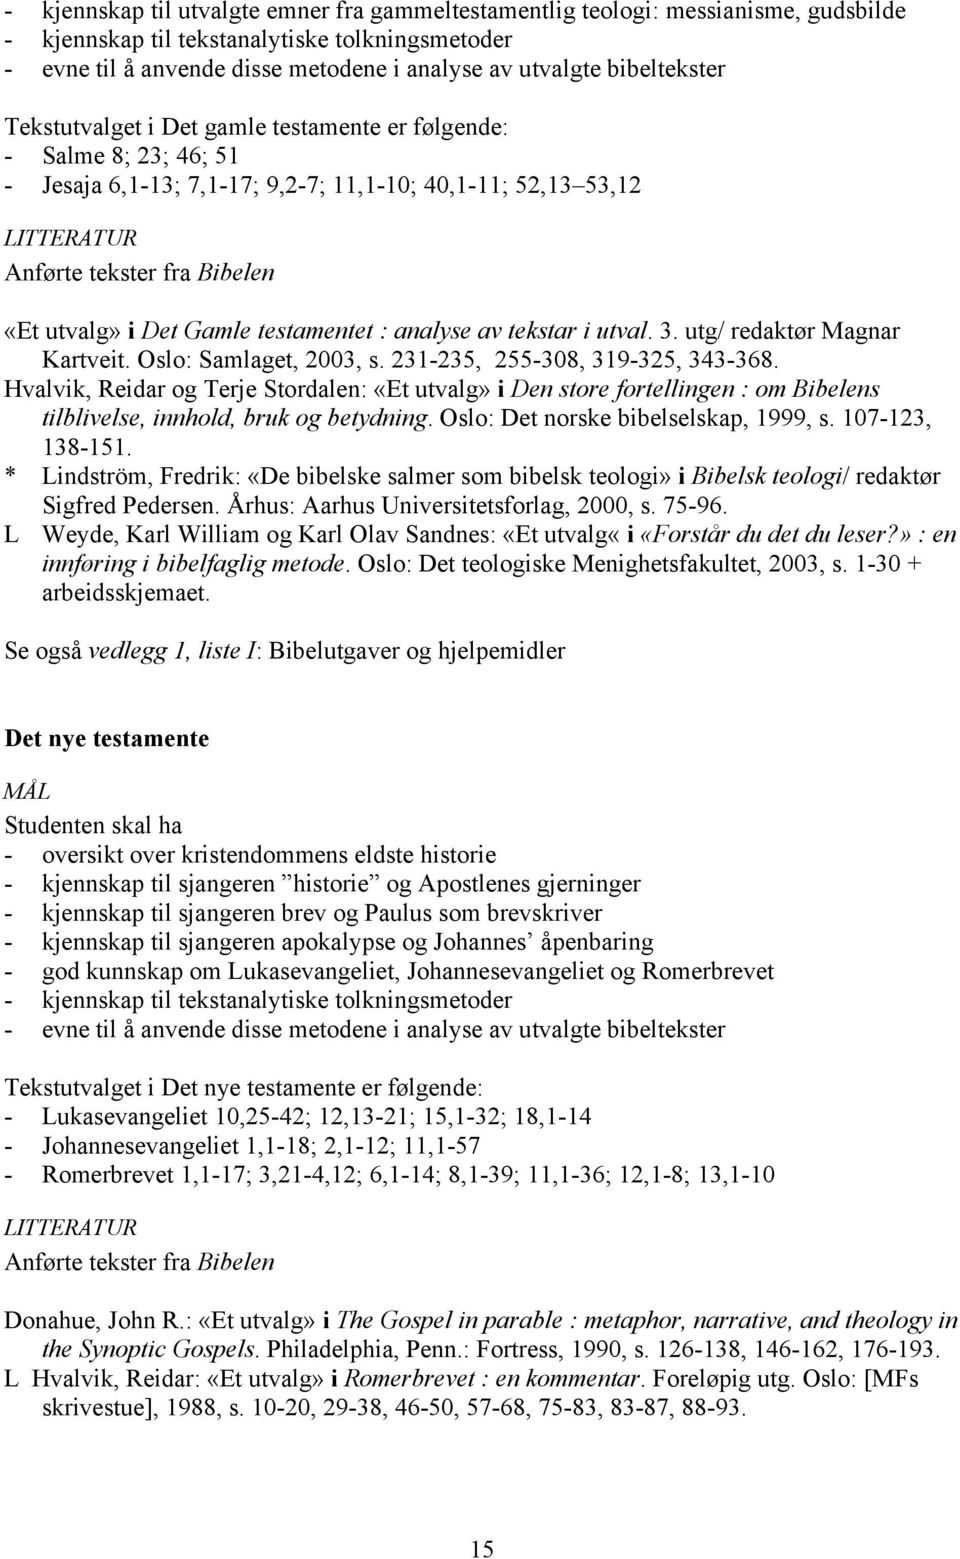 testamentet : analyse av tekstar i utval. 3. utg/ redaktør Magnar Kartveit. Oslo: Samlaget, 2003, s. 231-235, 255-308, 319-325, 343-368.